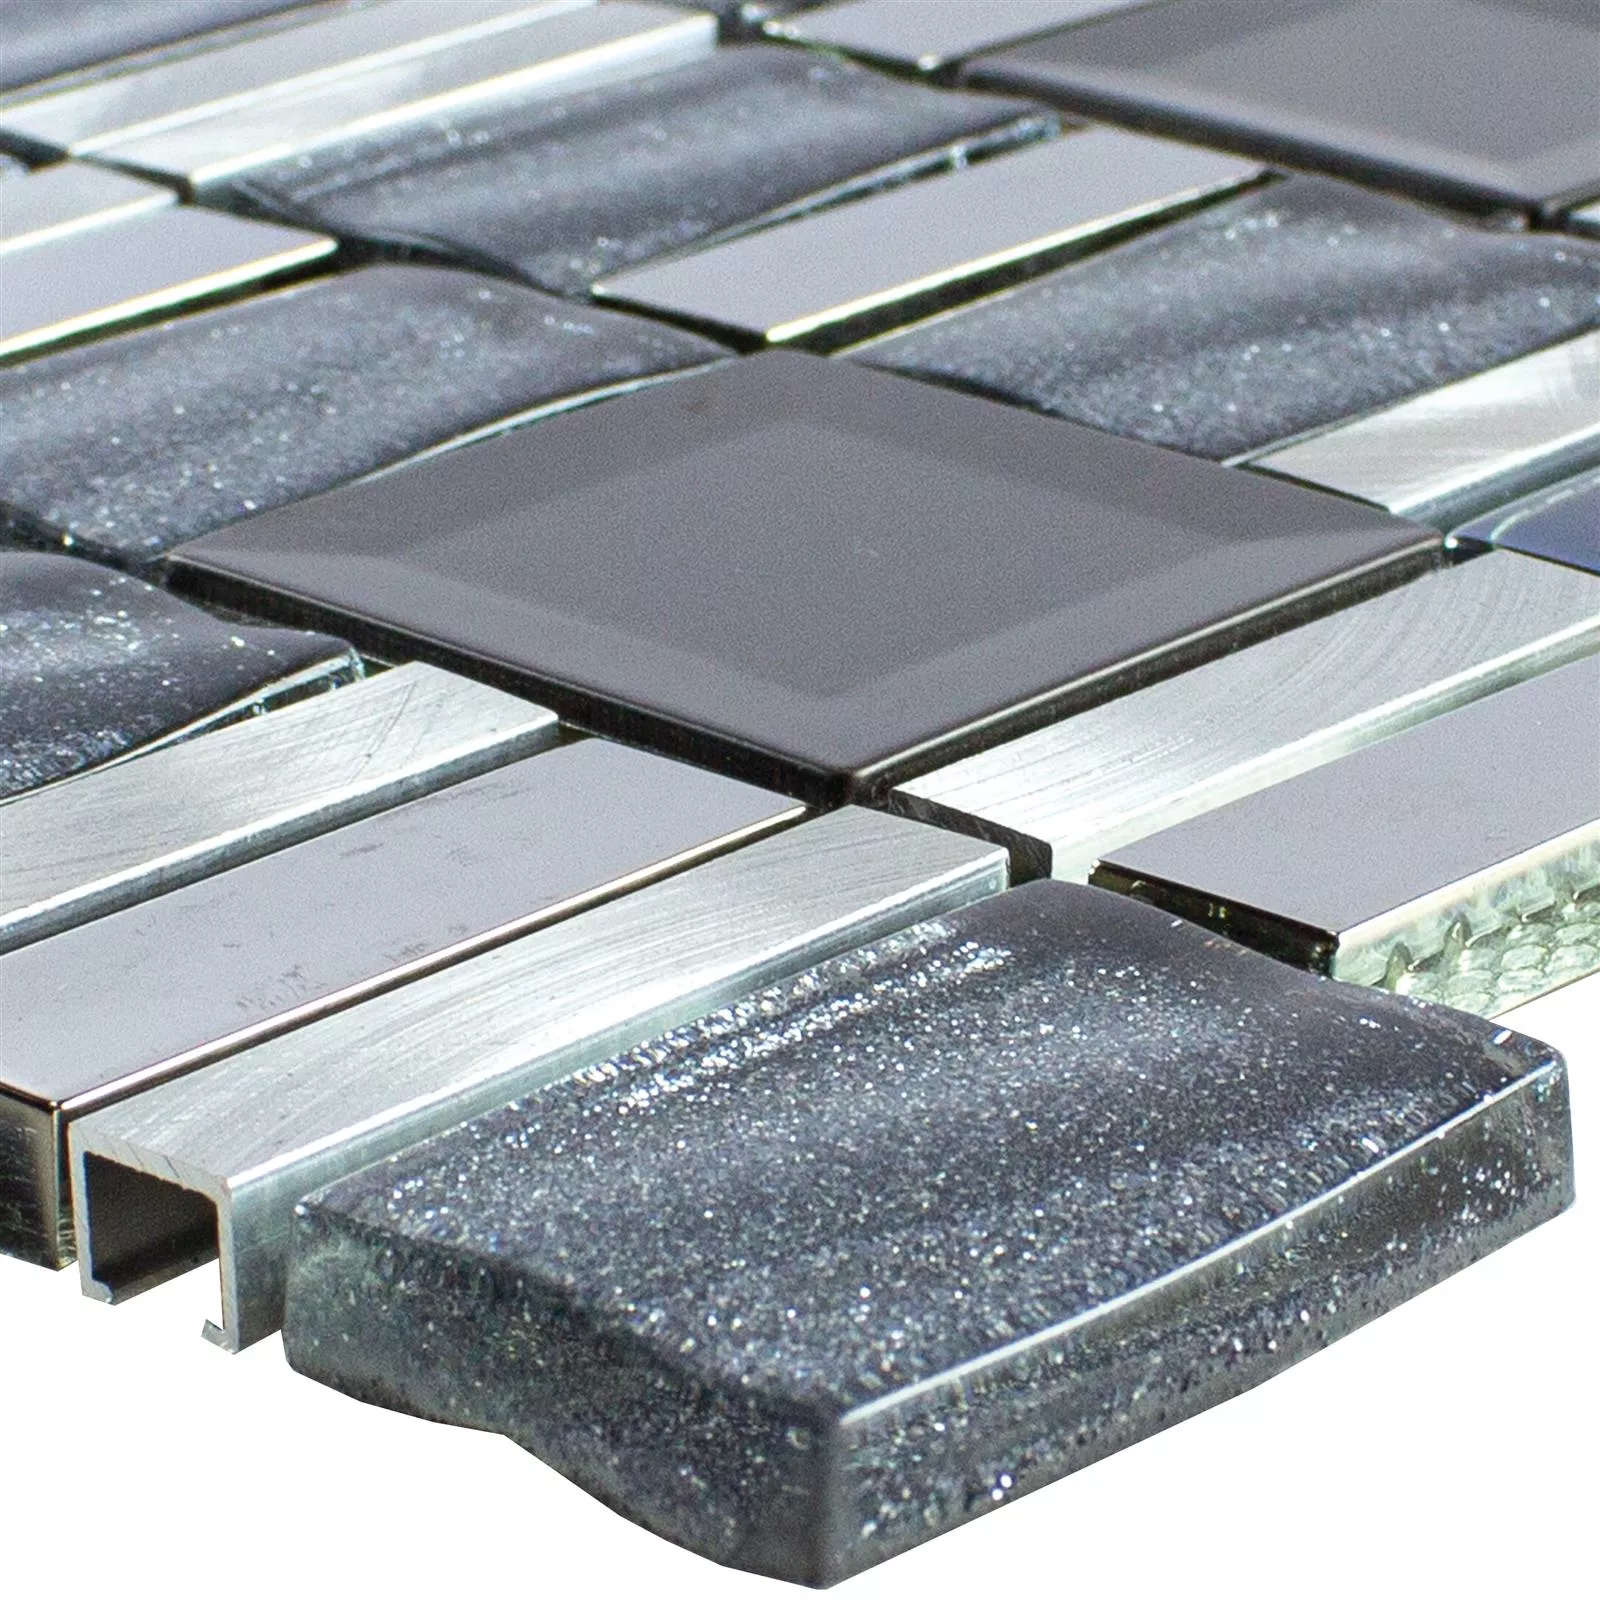 Glass Aluminium Mosaic LaCrosse Black Grey Silver